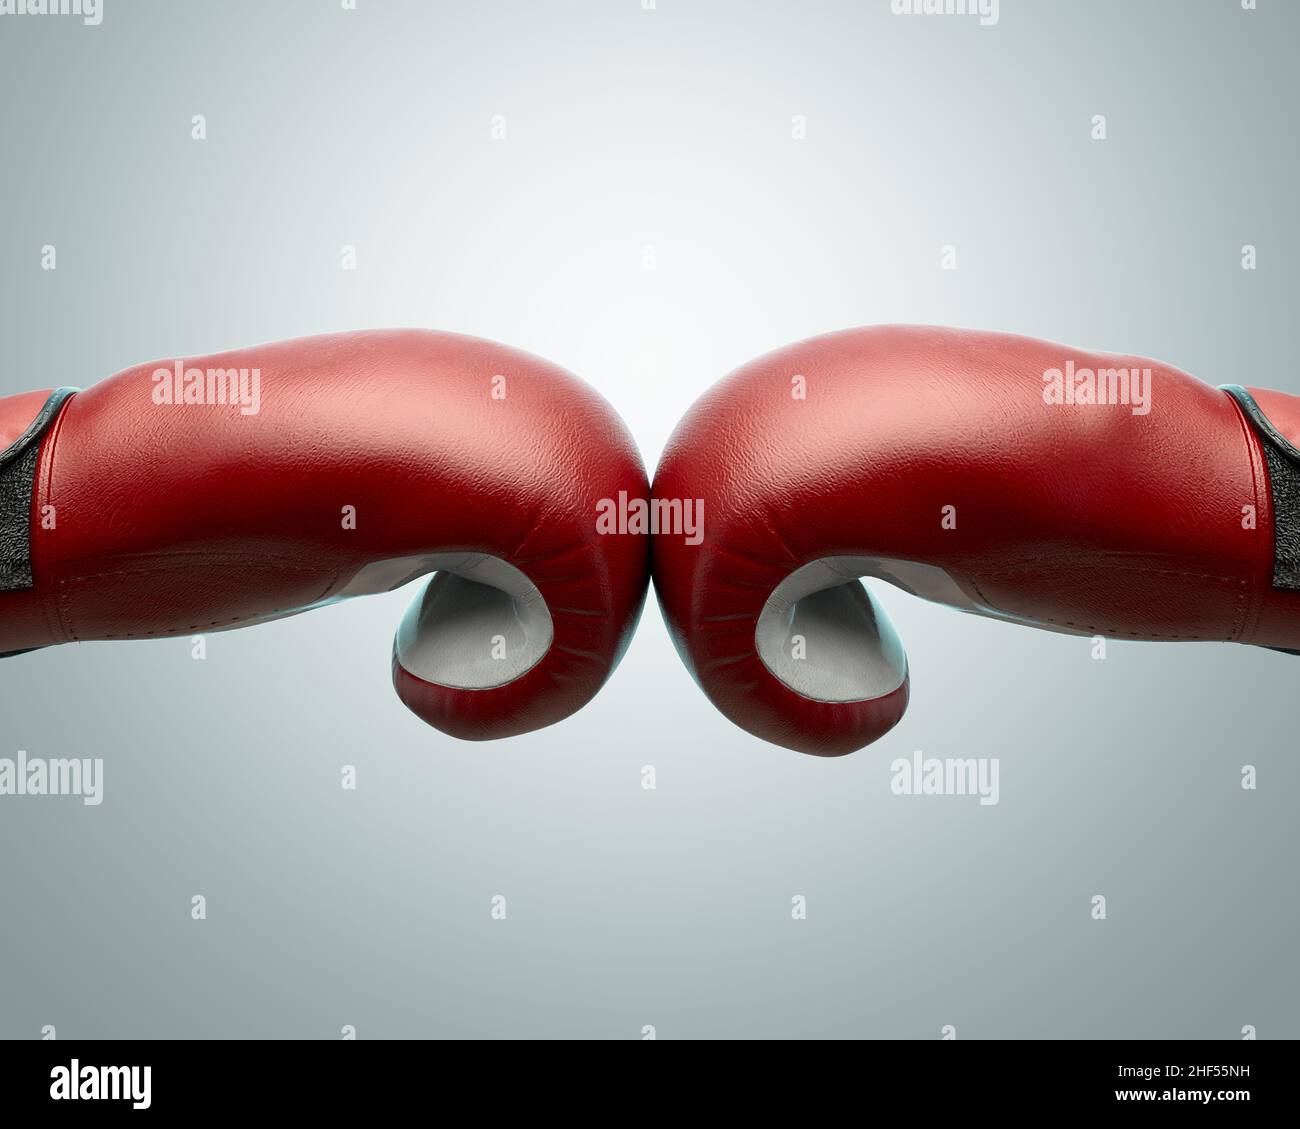 Un concetto che mostra due guanti da boxe opposti rossi e bianchi che toccano al centro di uno sfondo isolato - 3D rendering Foto Stock